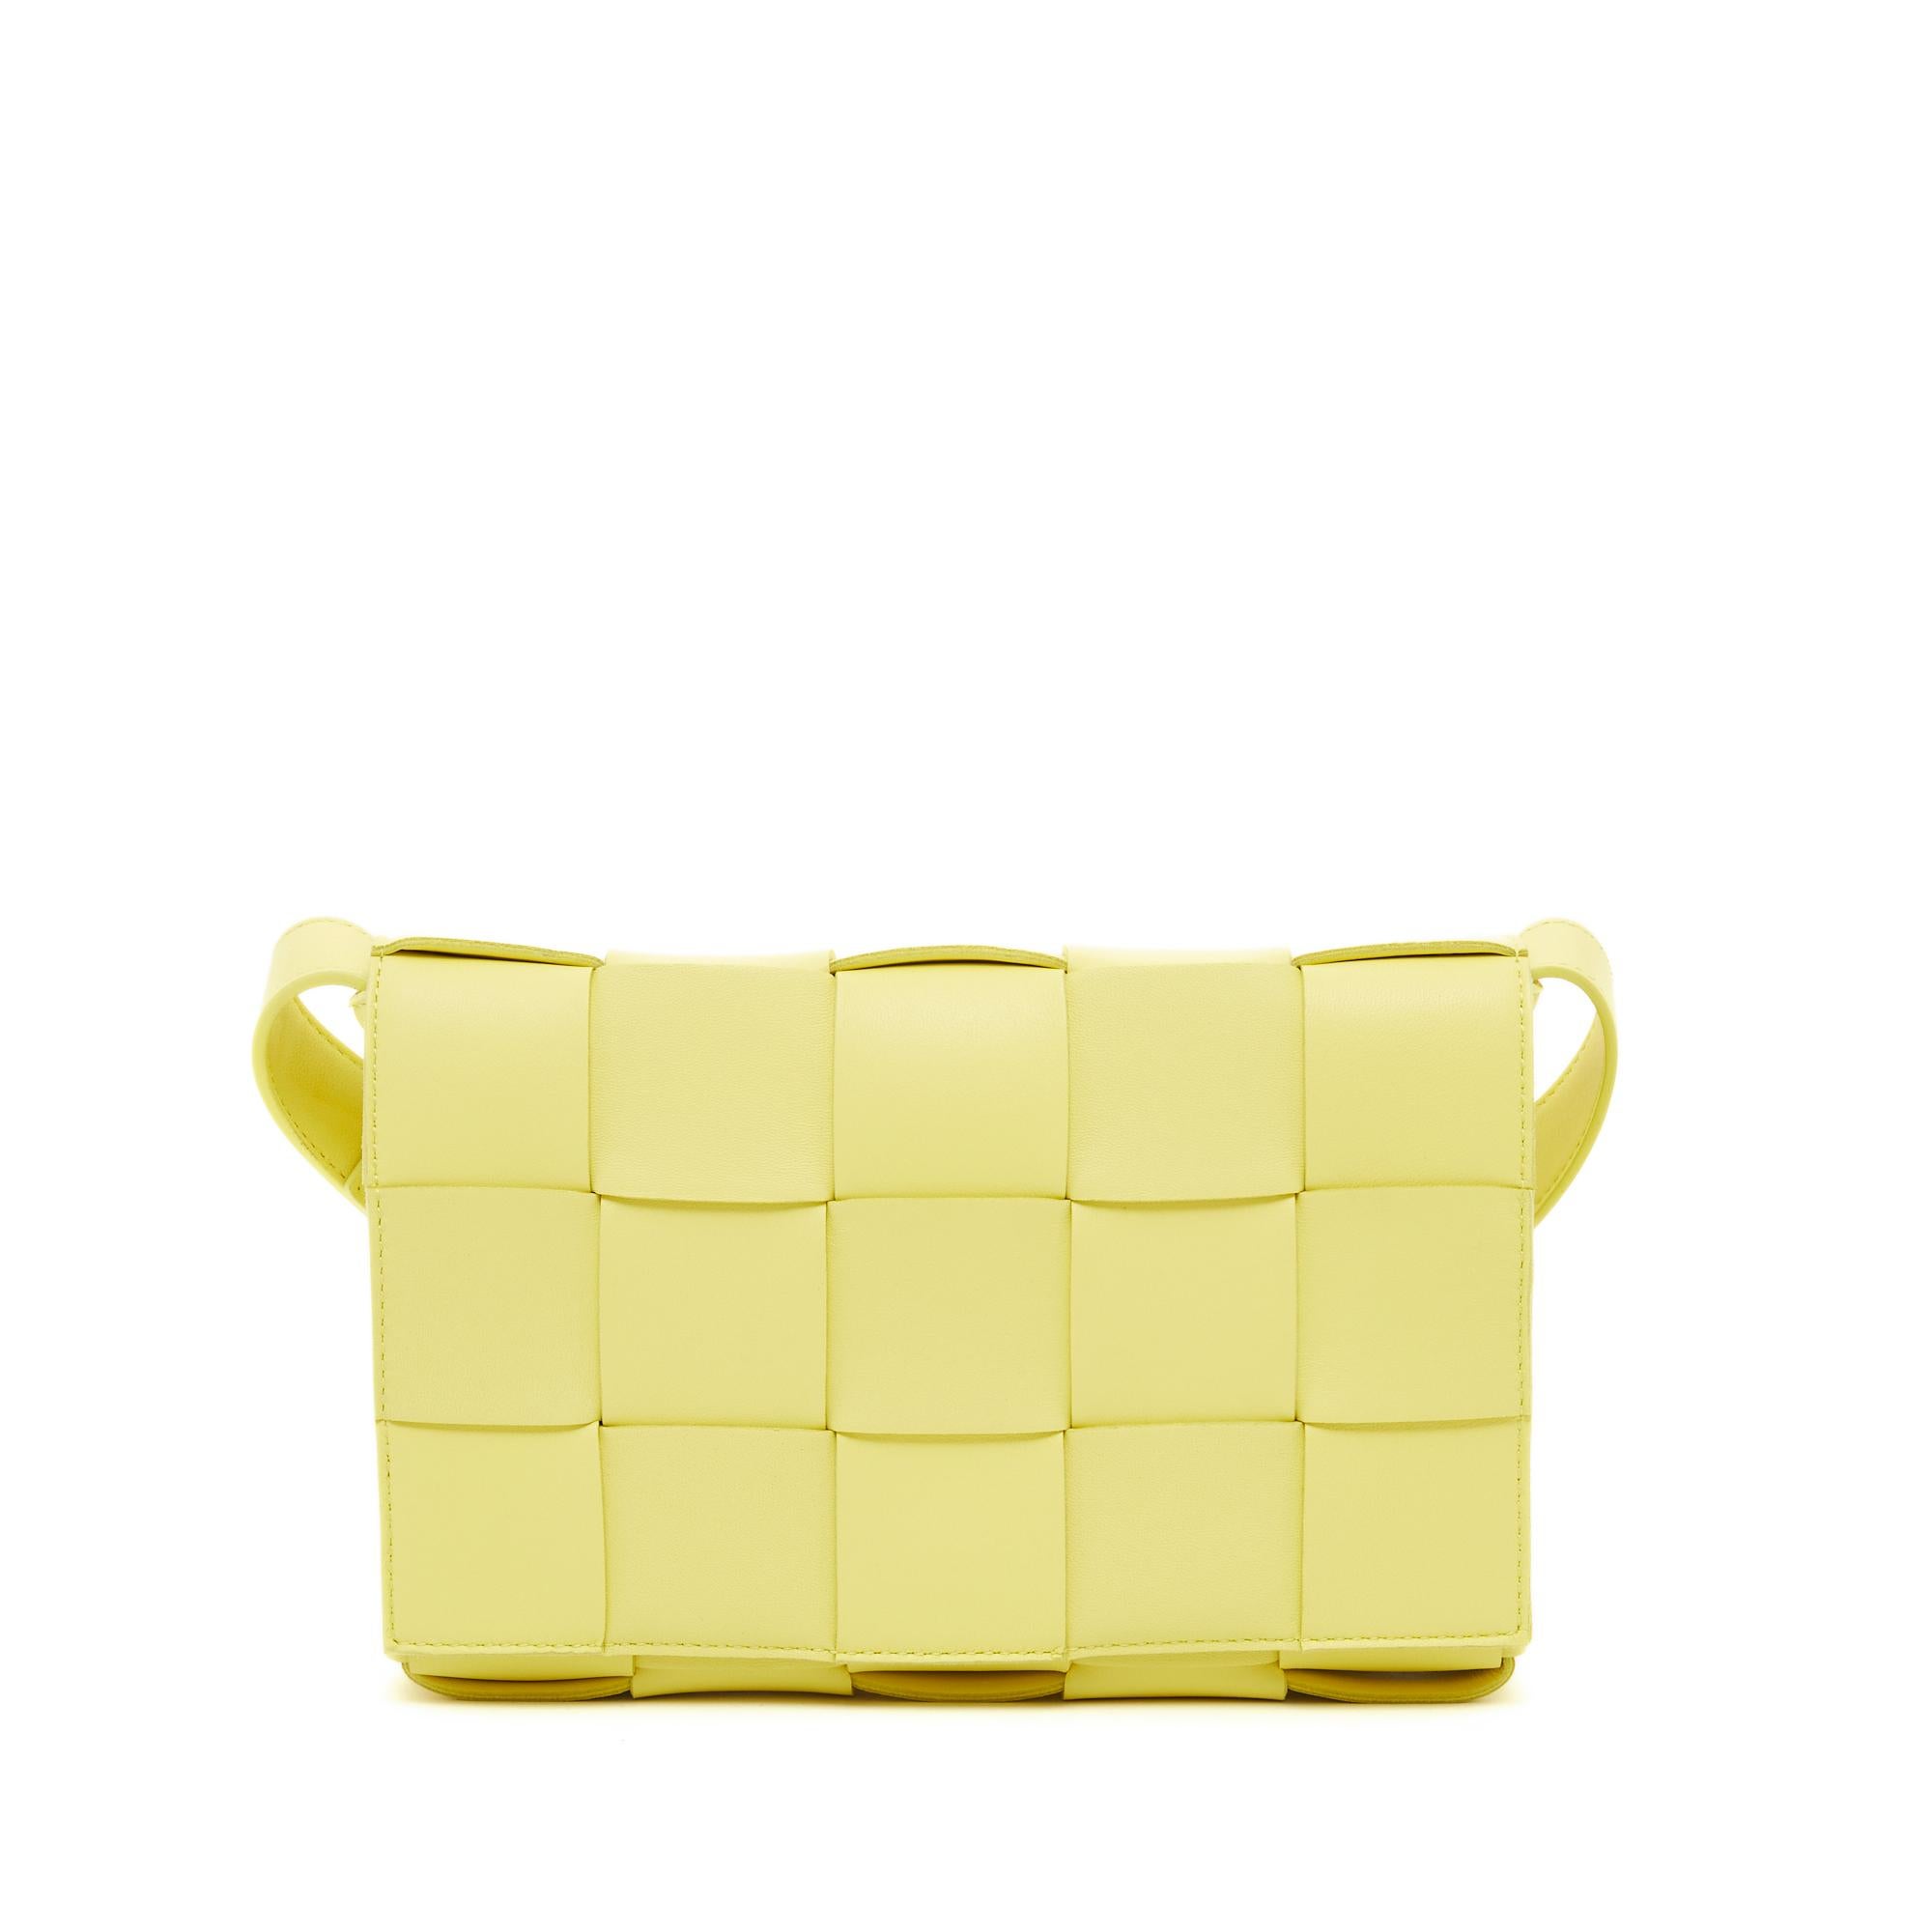 Bottega Veneta Cassette model bag in yellow leather (